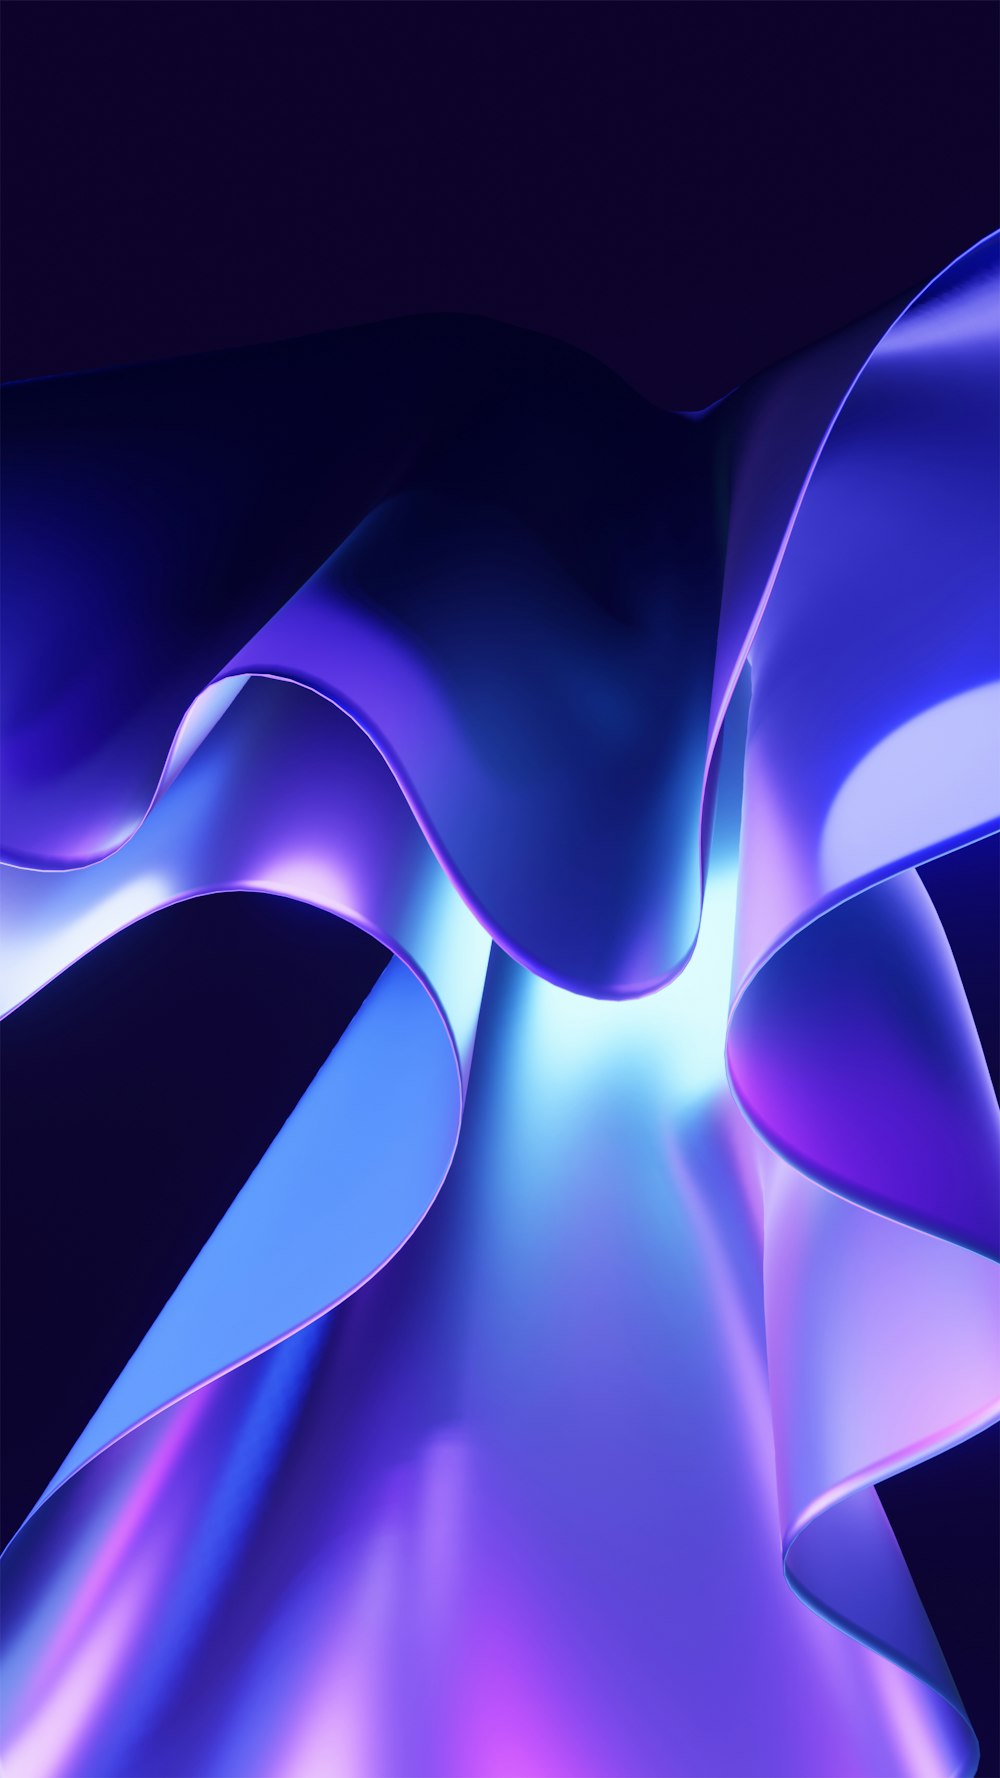 Un fondo abstracto azul y púrpura con líneas onduladas